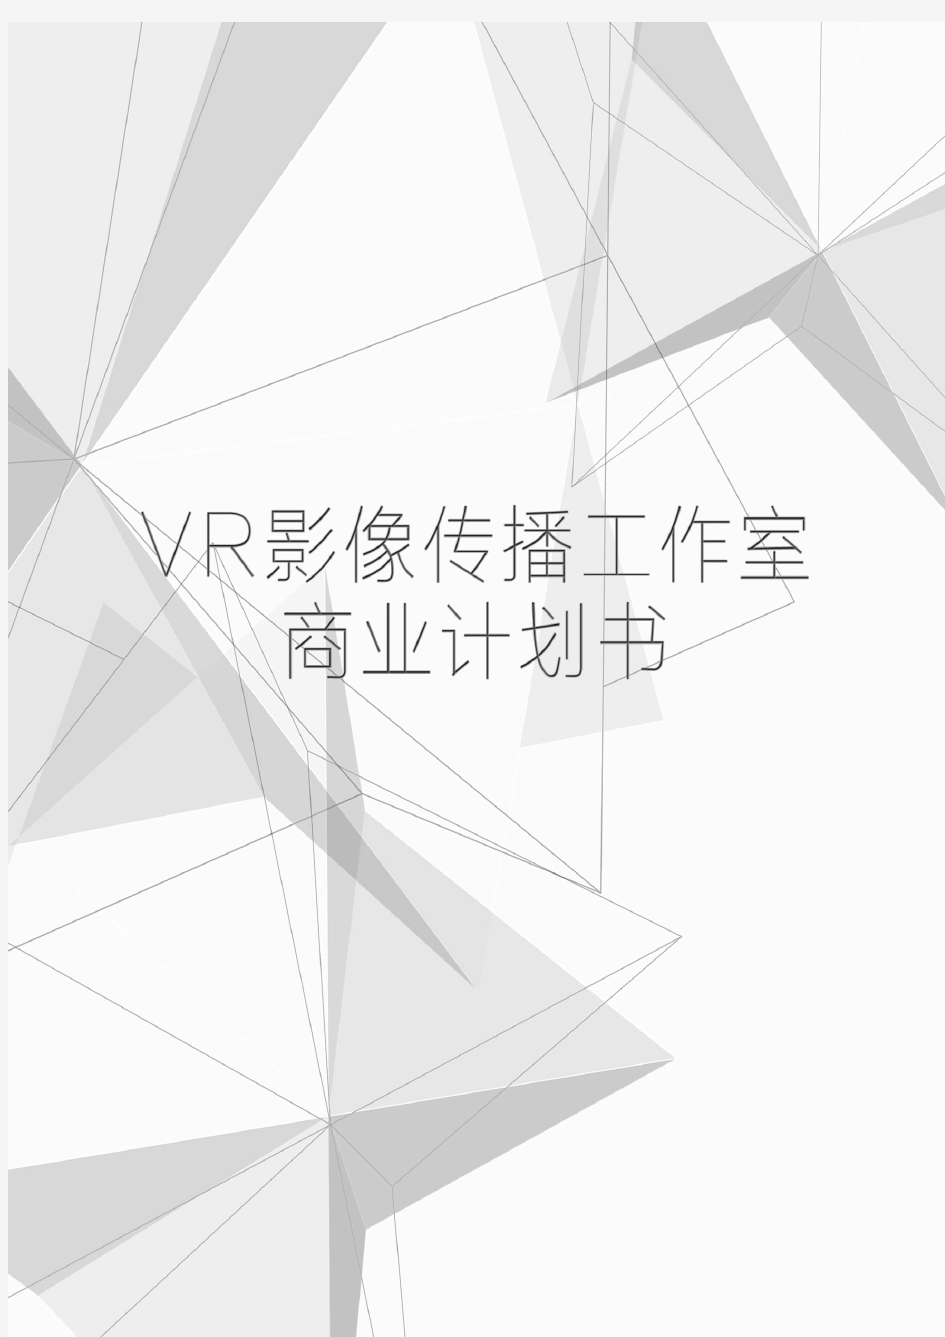 VR工作室 商业计划书